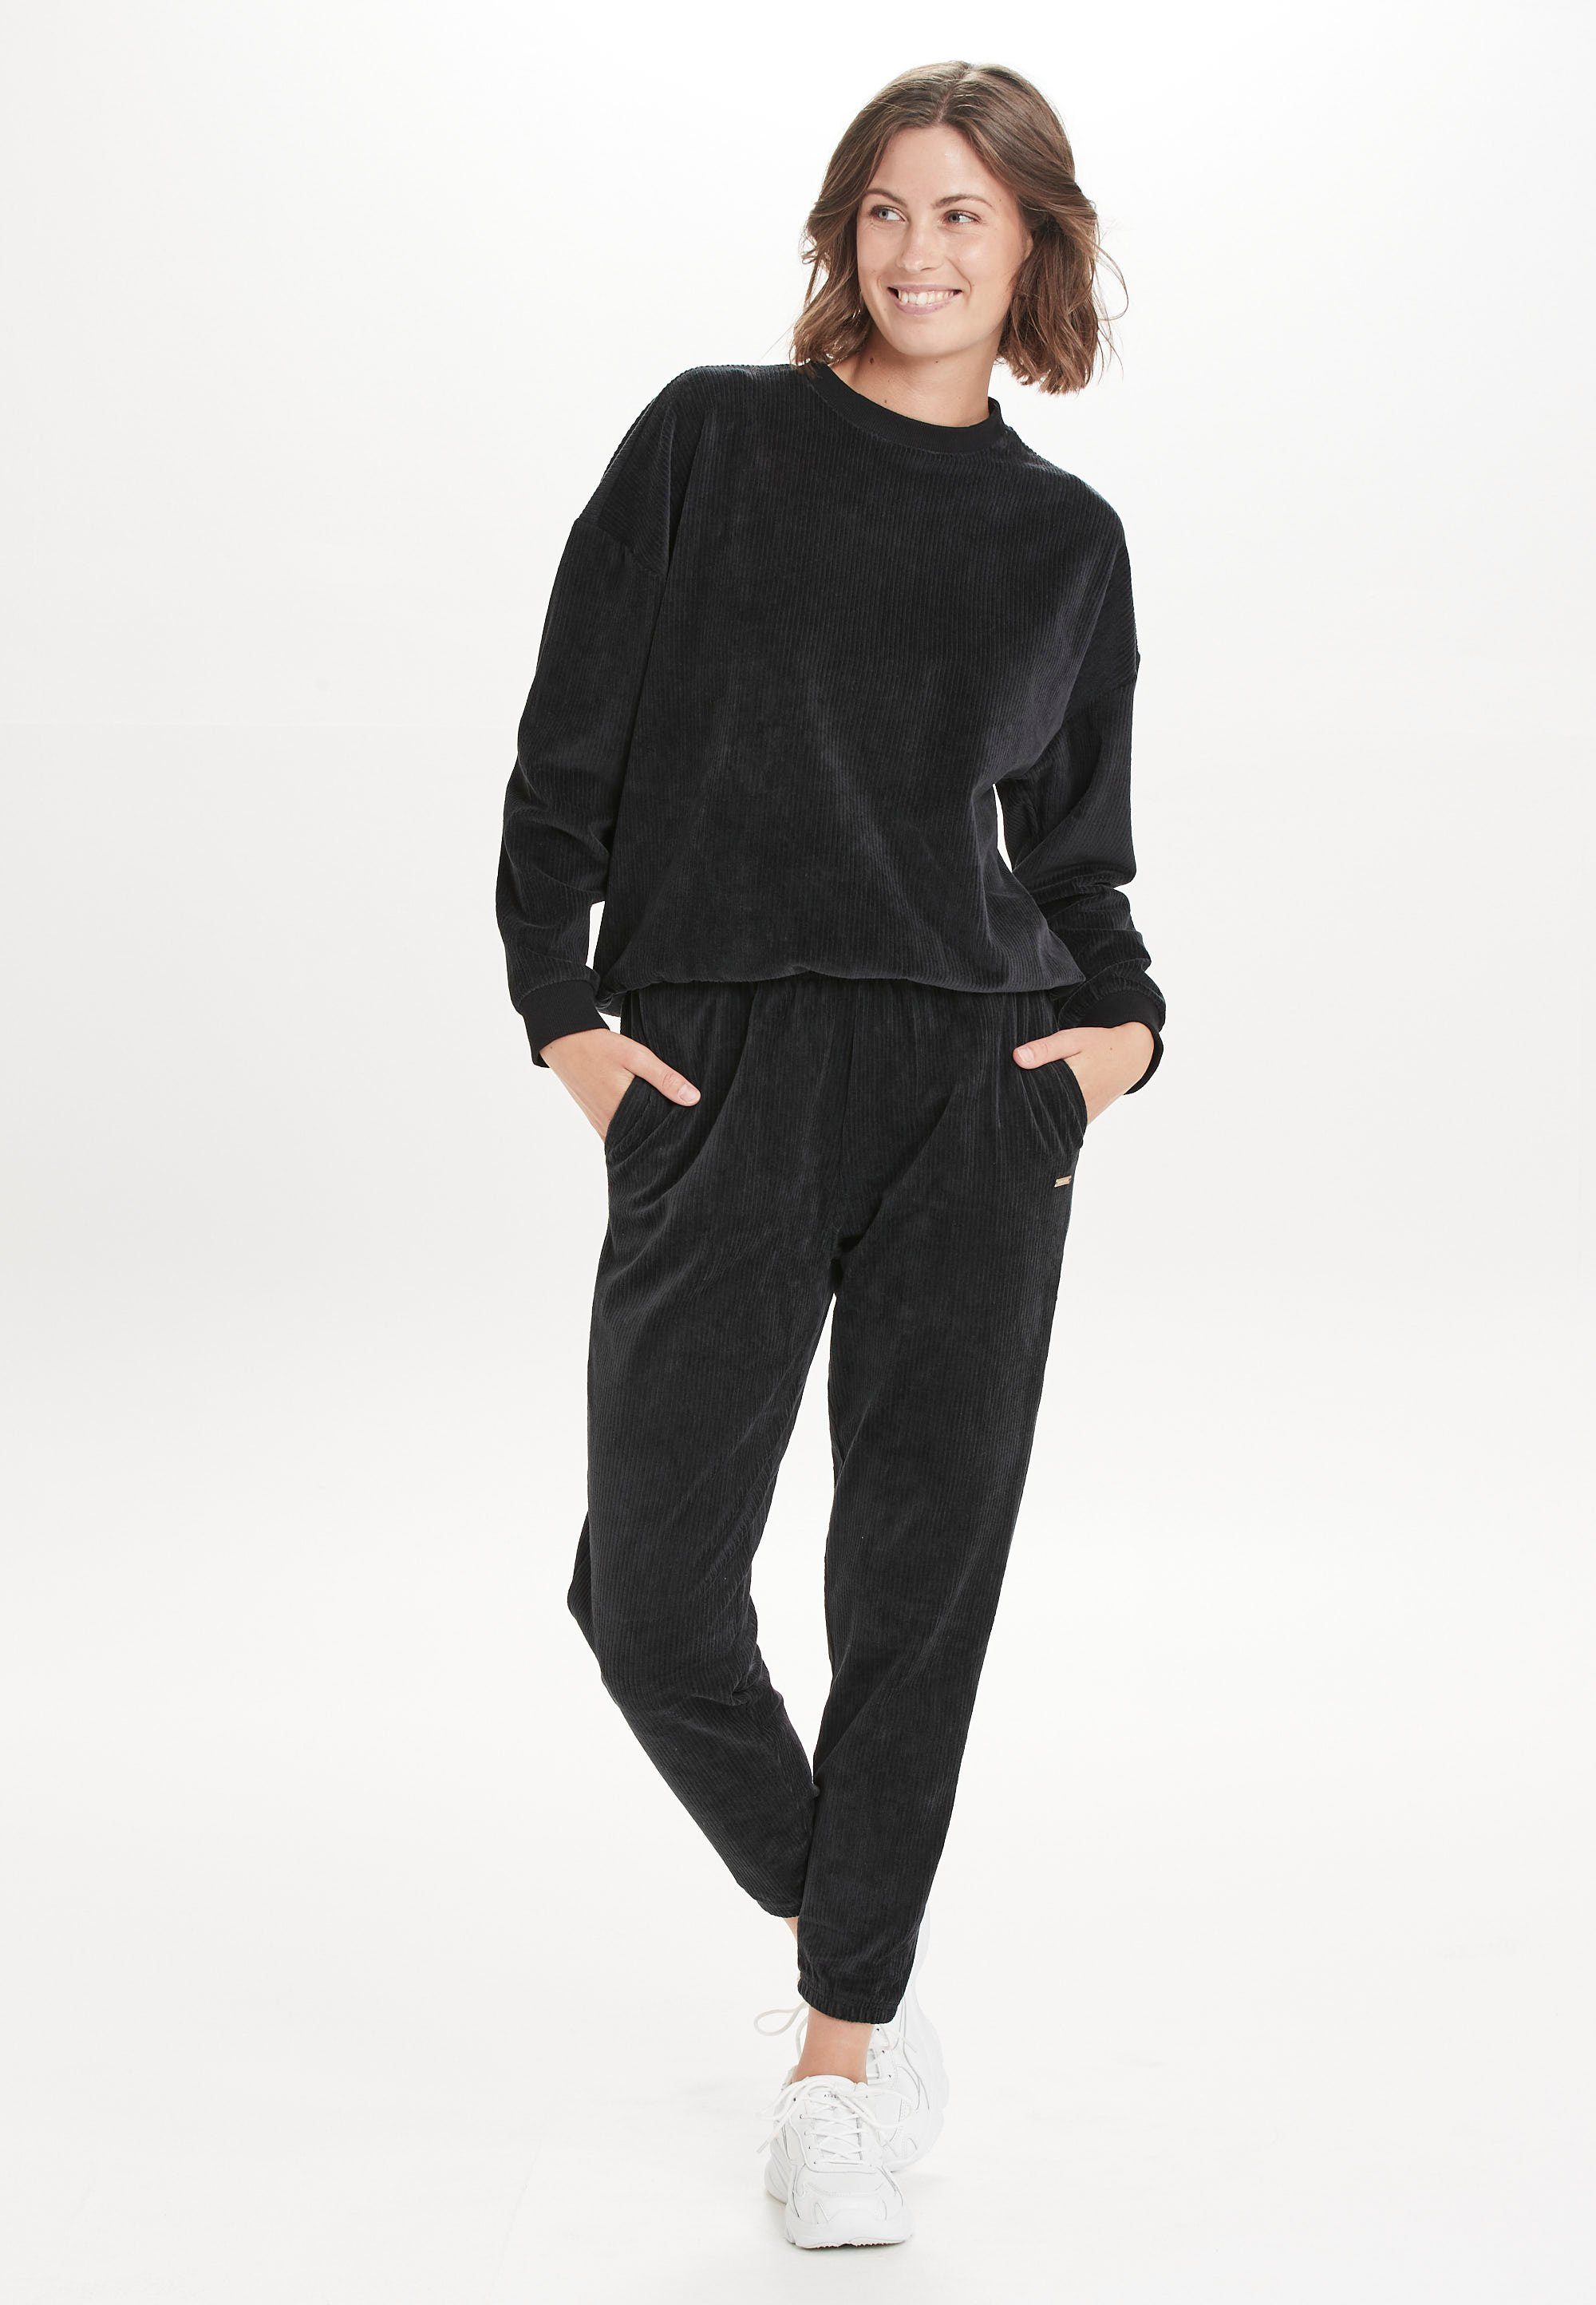 schwarz Marlie im ATHLECIA Sweatshirt Cord-Look trendigen